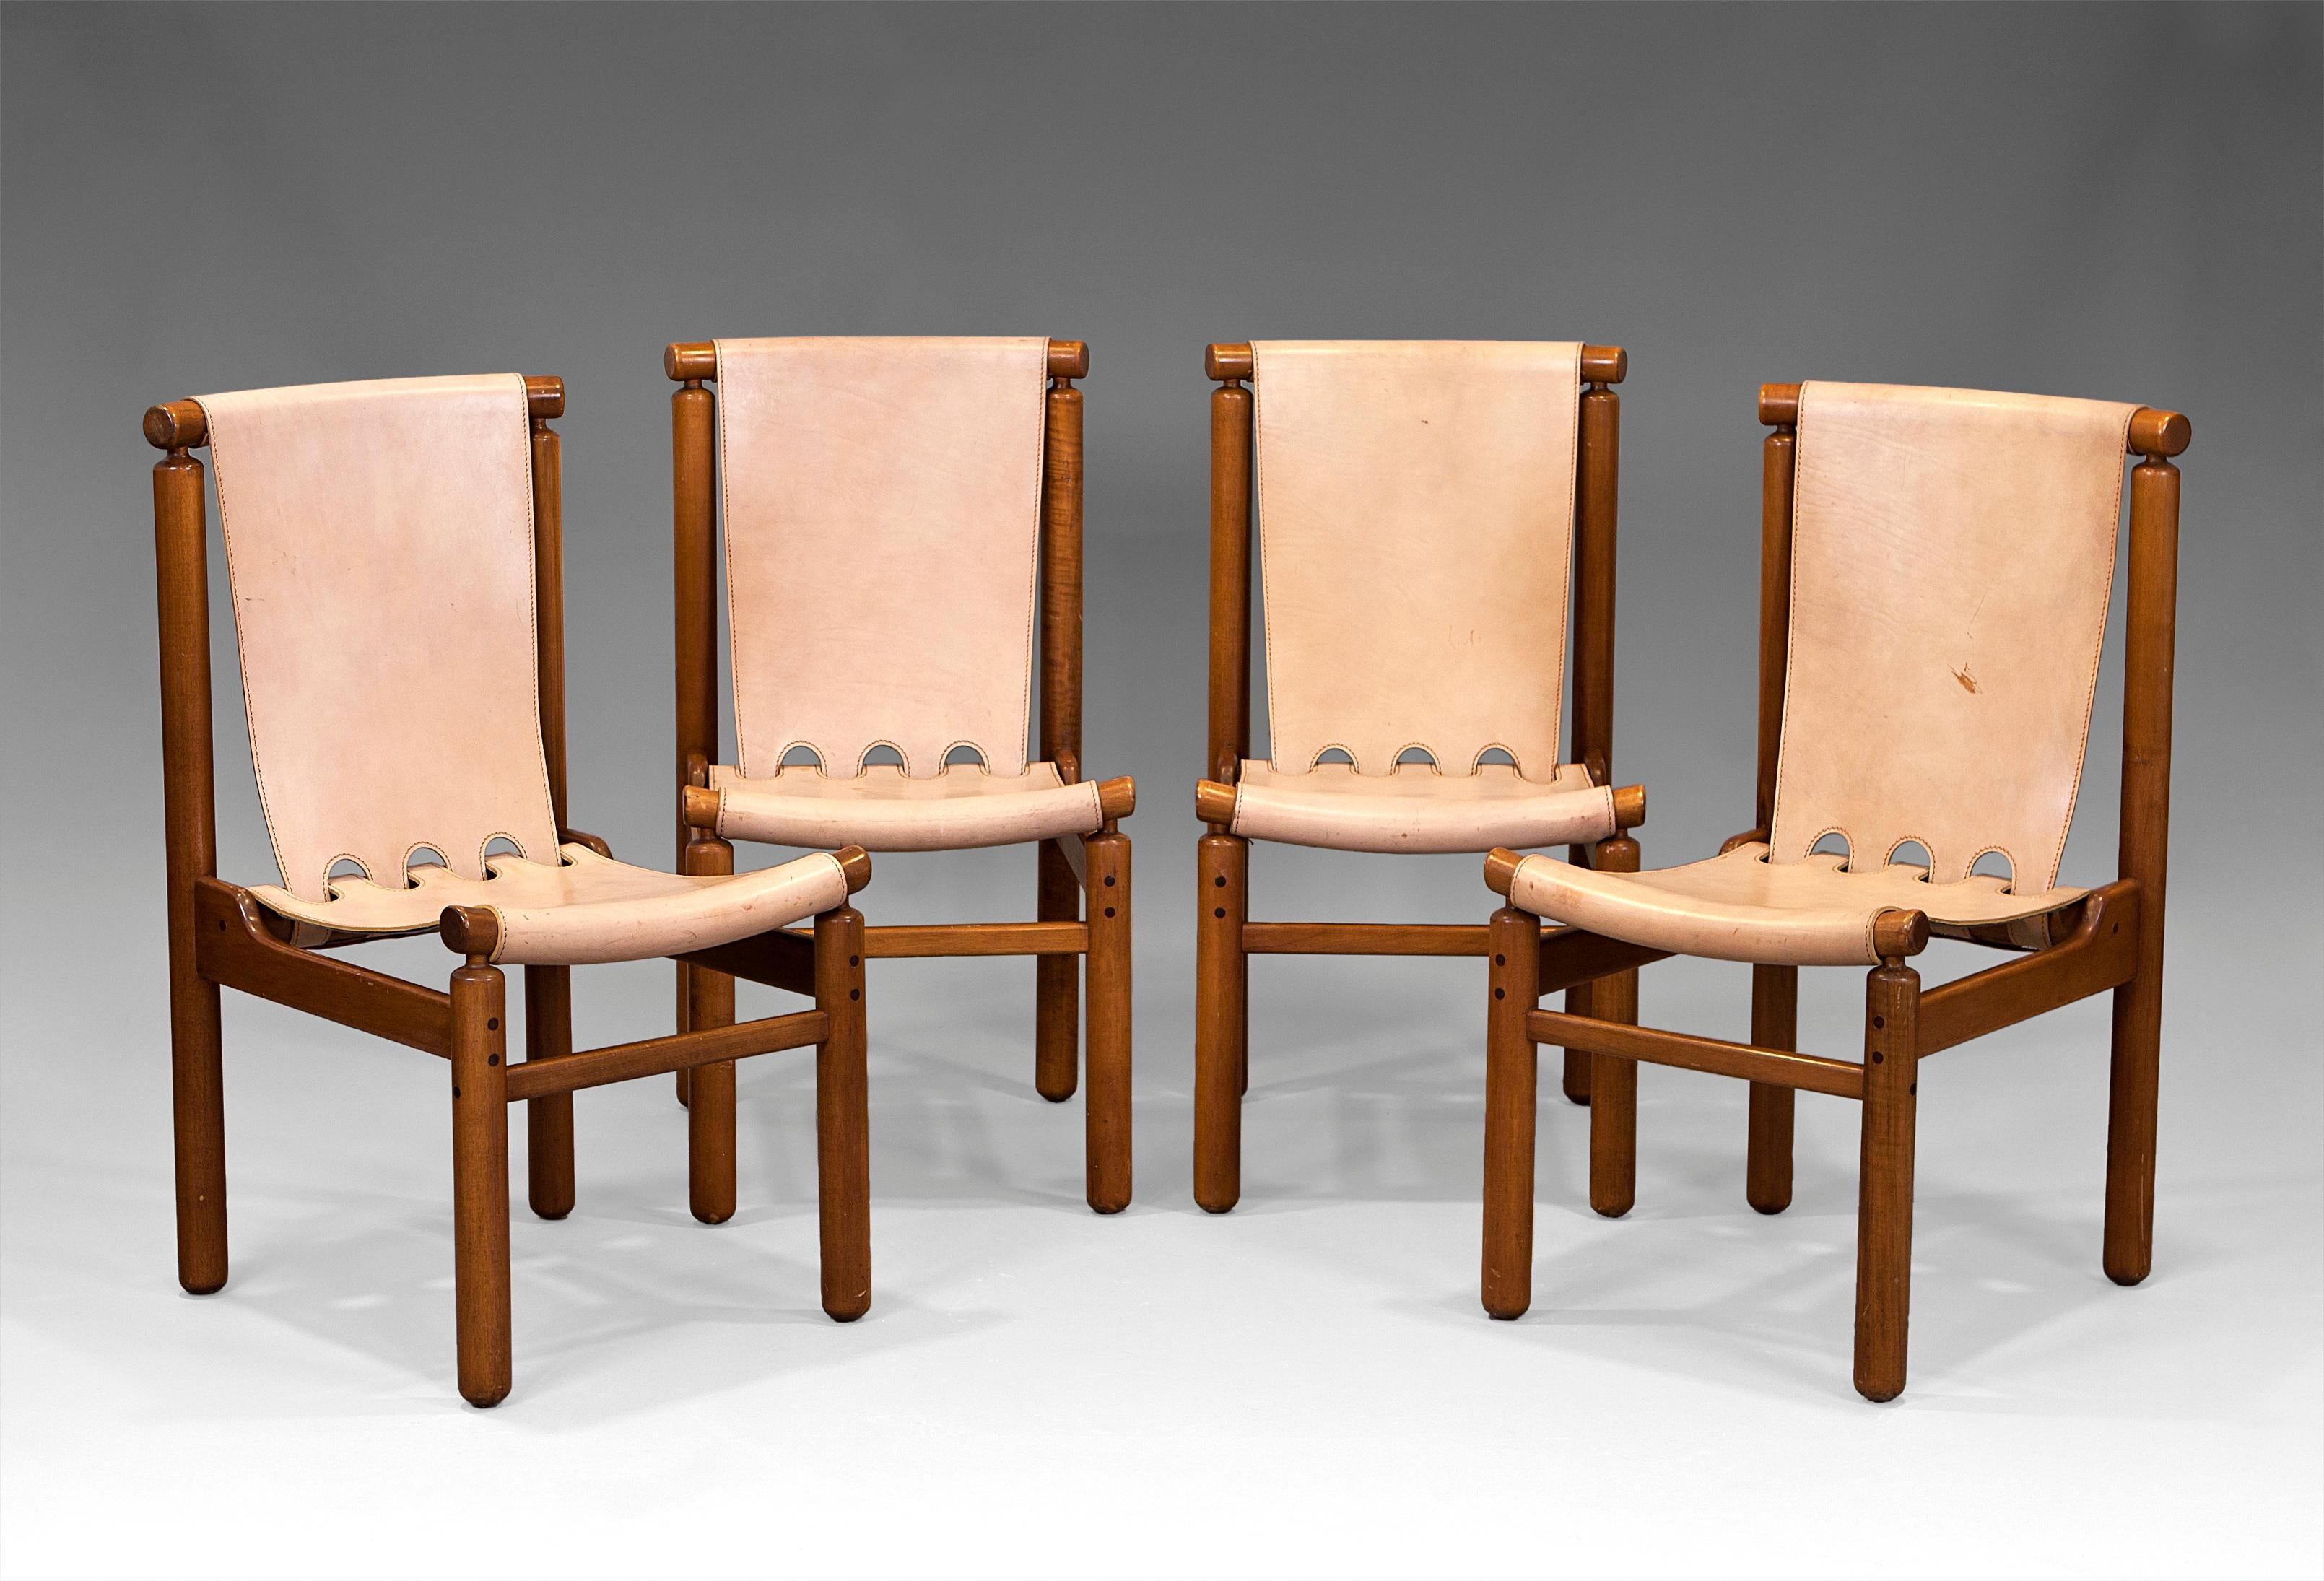 Stühle von Ilmari Tapiovaara aus Buche und Naturleder für La Permanente Mobili Cantu. Italien, 50er Jahre. Der Zustand entspricht dem Alter und dem Gebrauch.